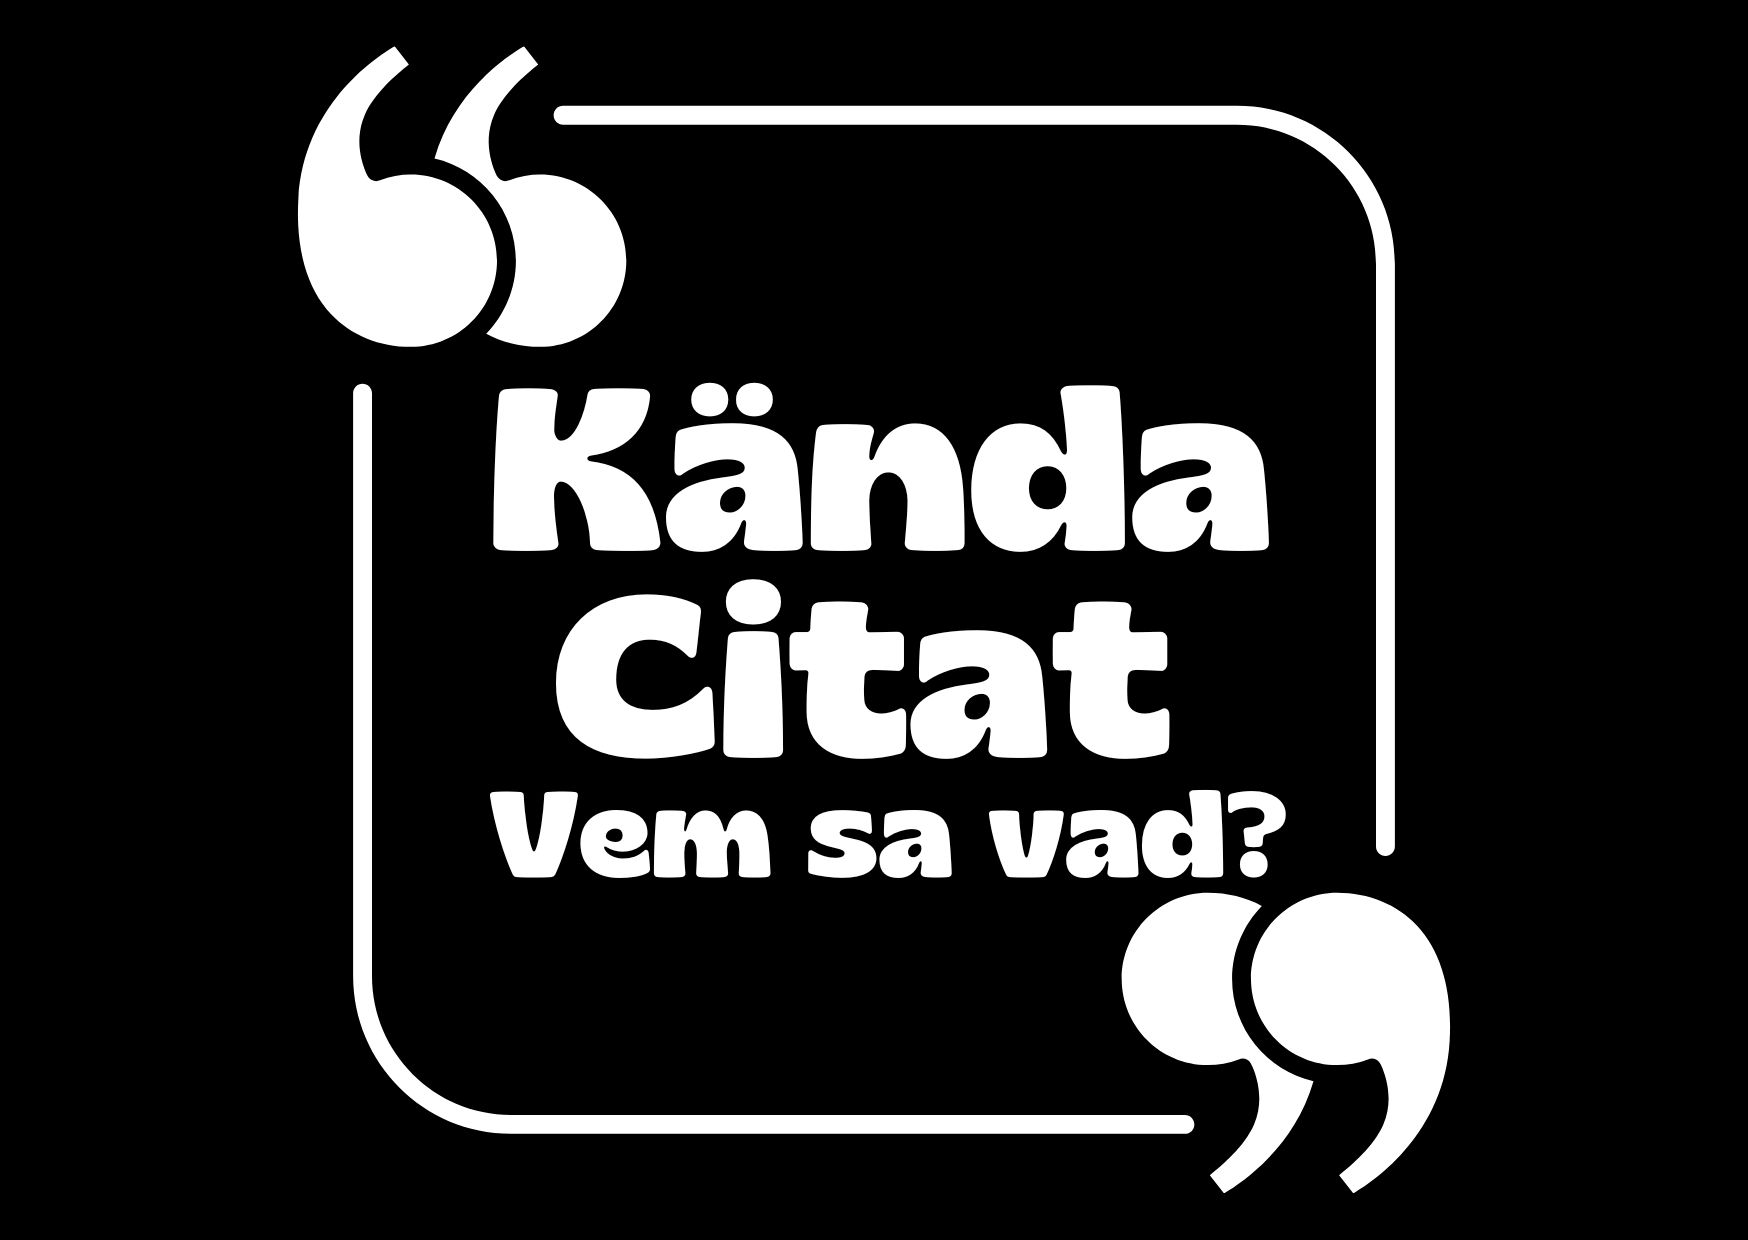 quiz_kanda_citat_vem_sa_vad_aktivitet_for_aldre